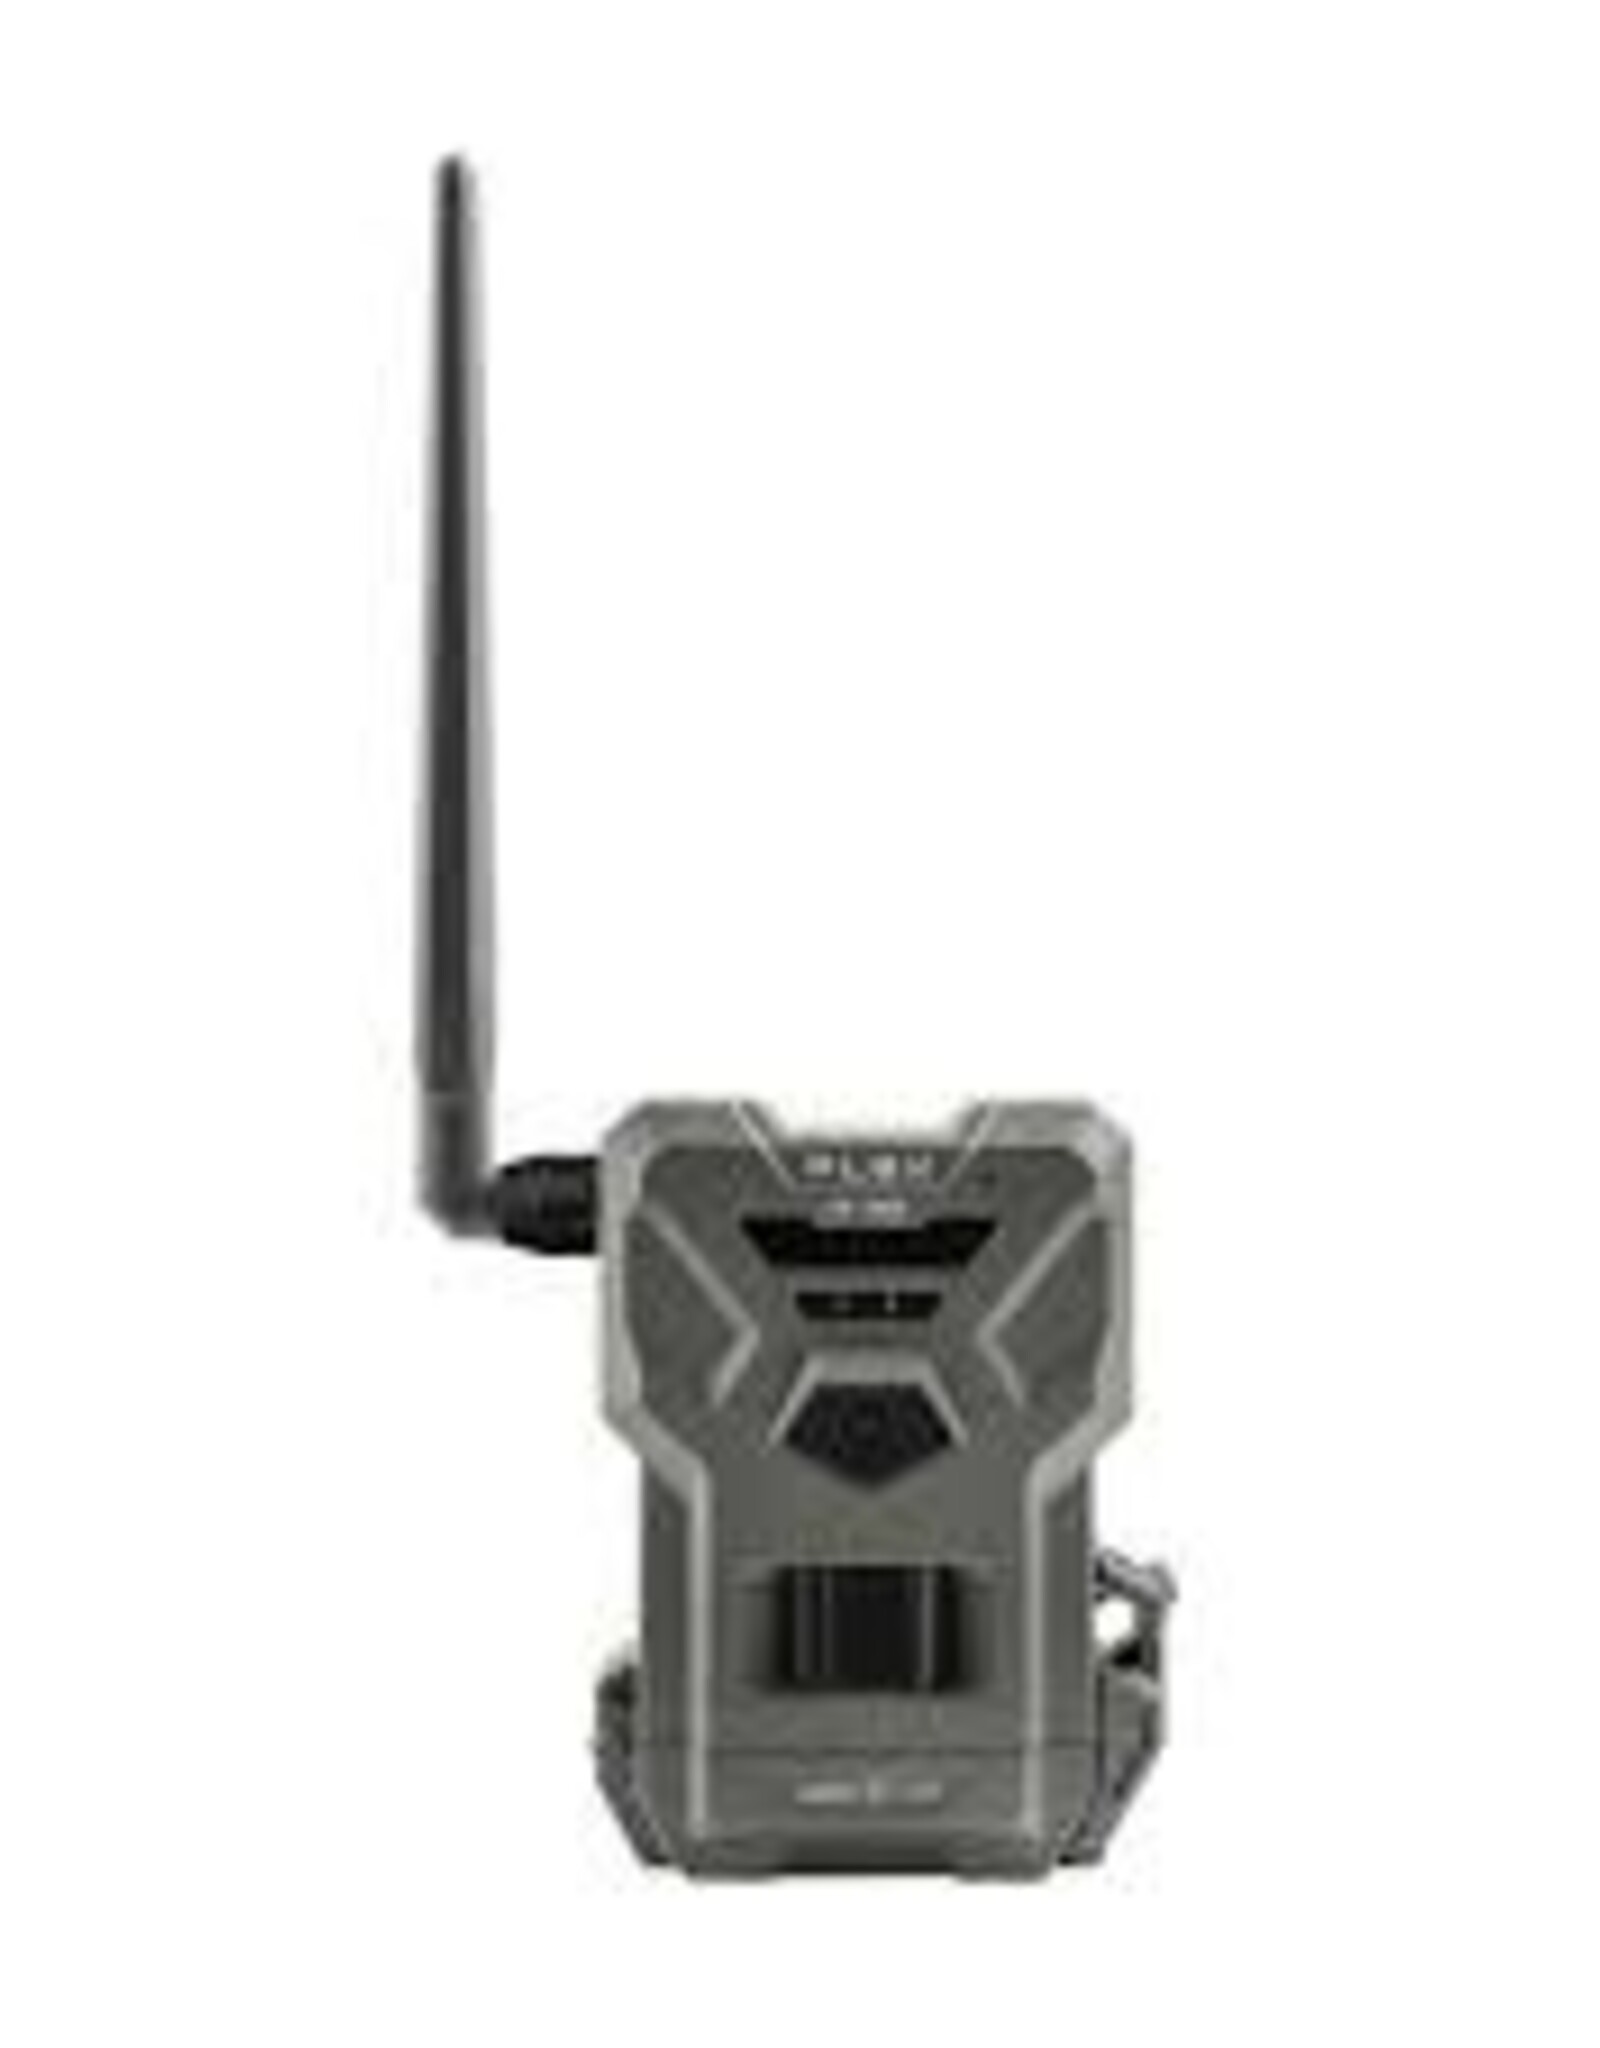 Spypoint Flex G-36 Cellular Trail Camera